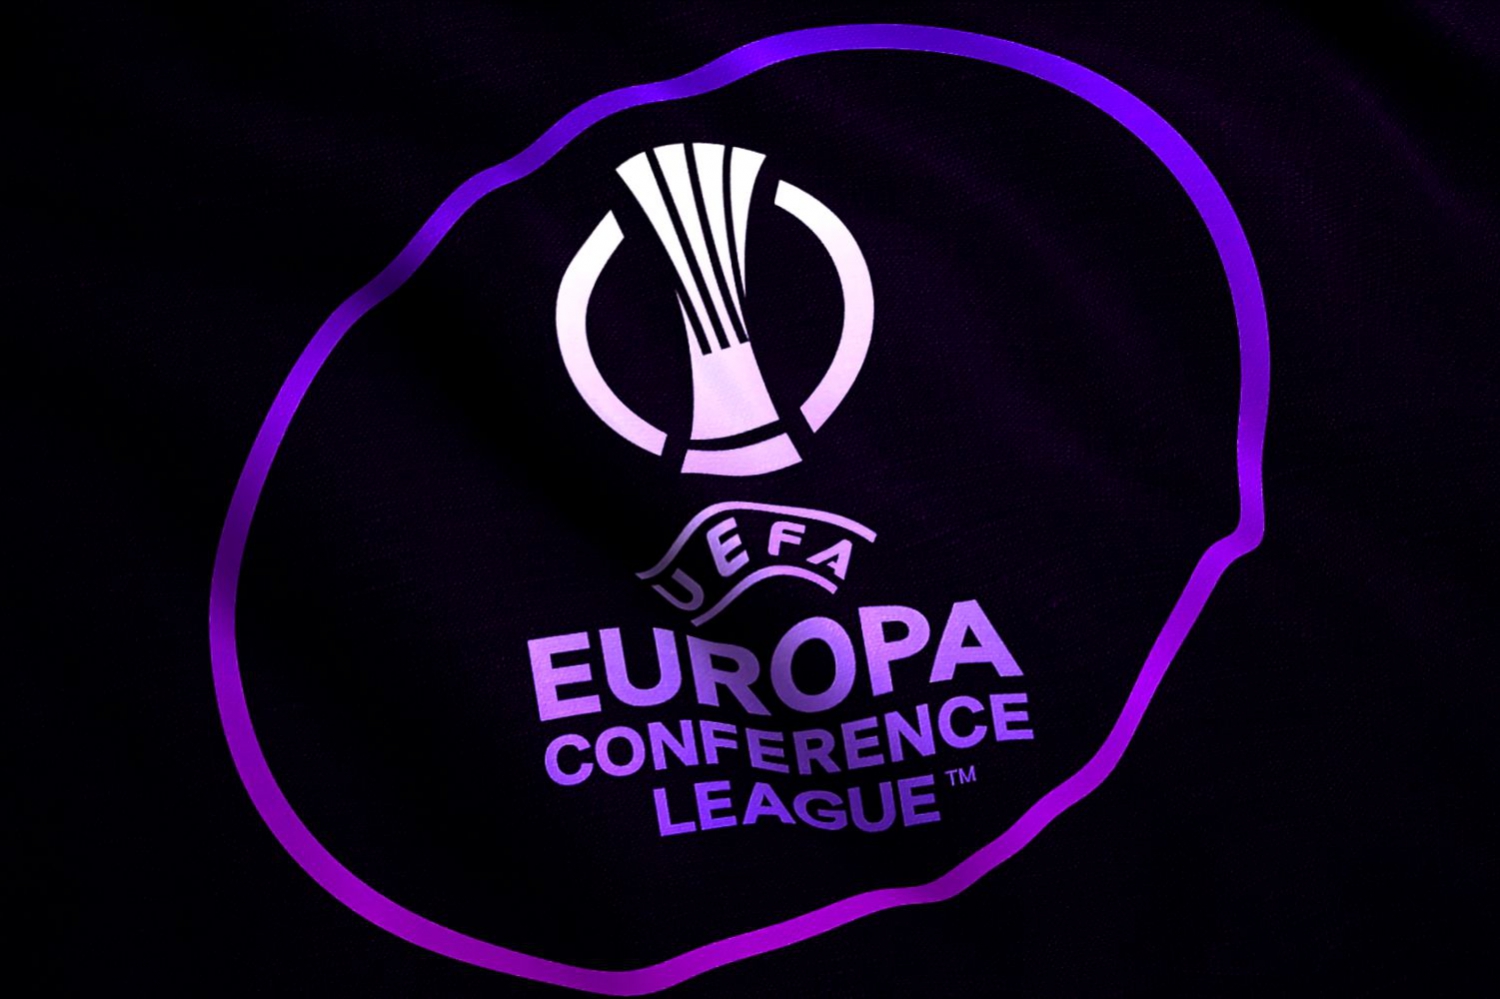 Europa Conference League: Legia Warszawa și Lech Poznań sunt clasate.  Pogoń Szczecin se va confrunta cu un adversar puternic [OFICJALNIE]